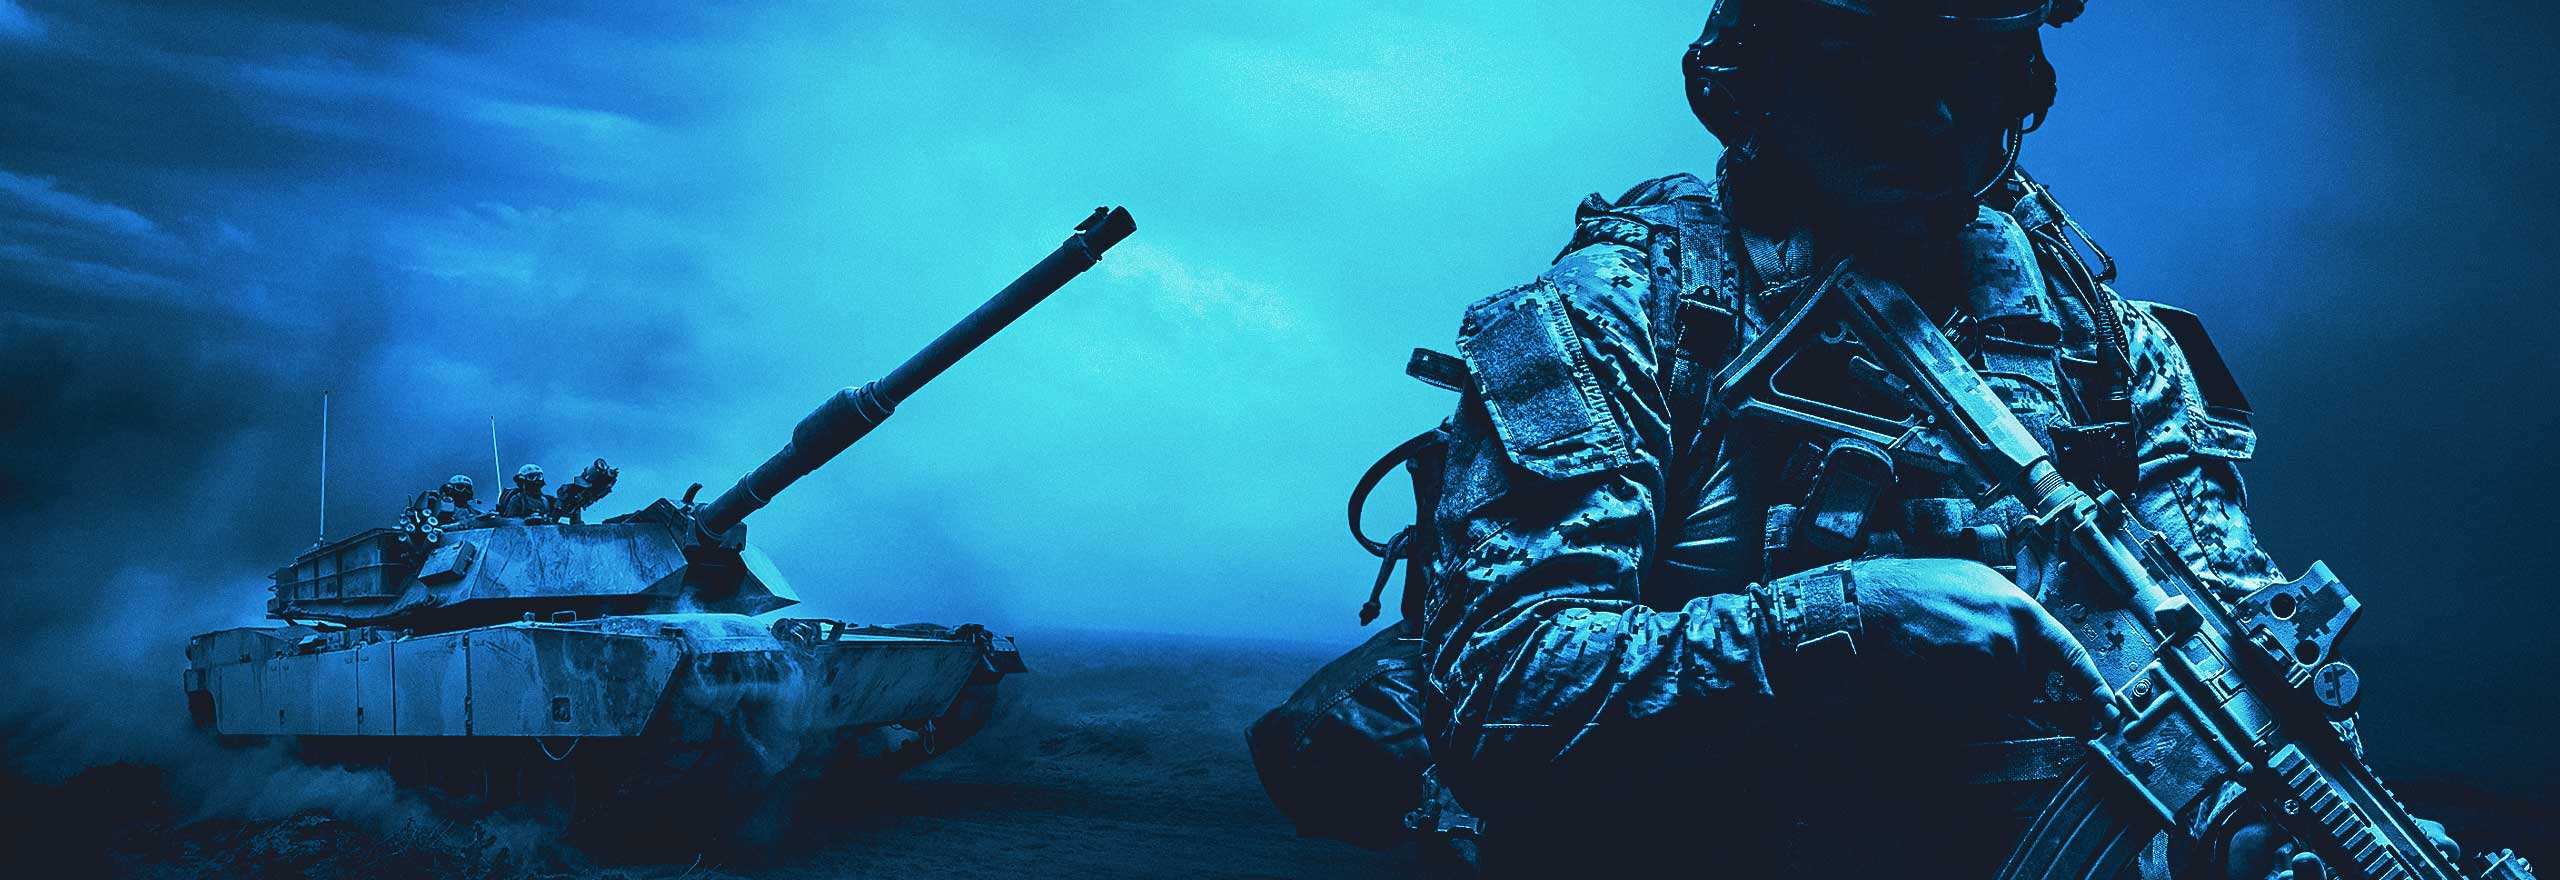 Una imagen azulada con un soldado, un depósito y helicópteros.